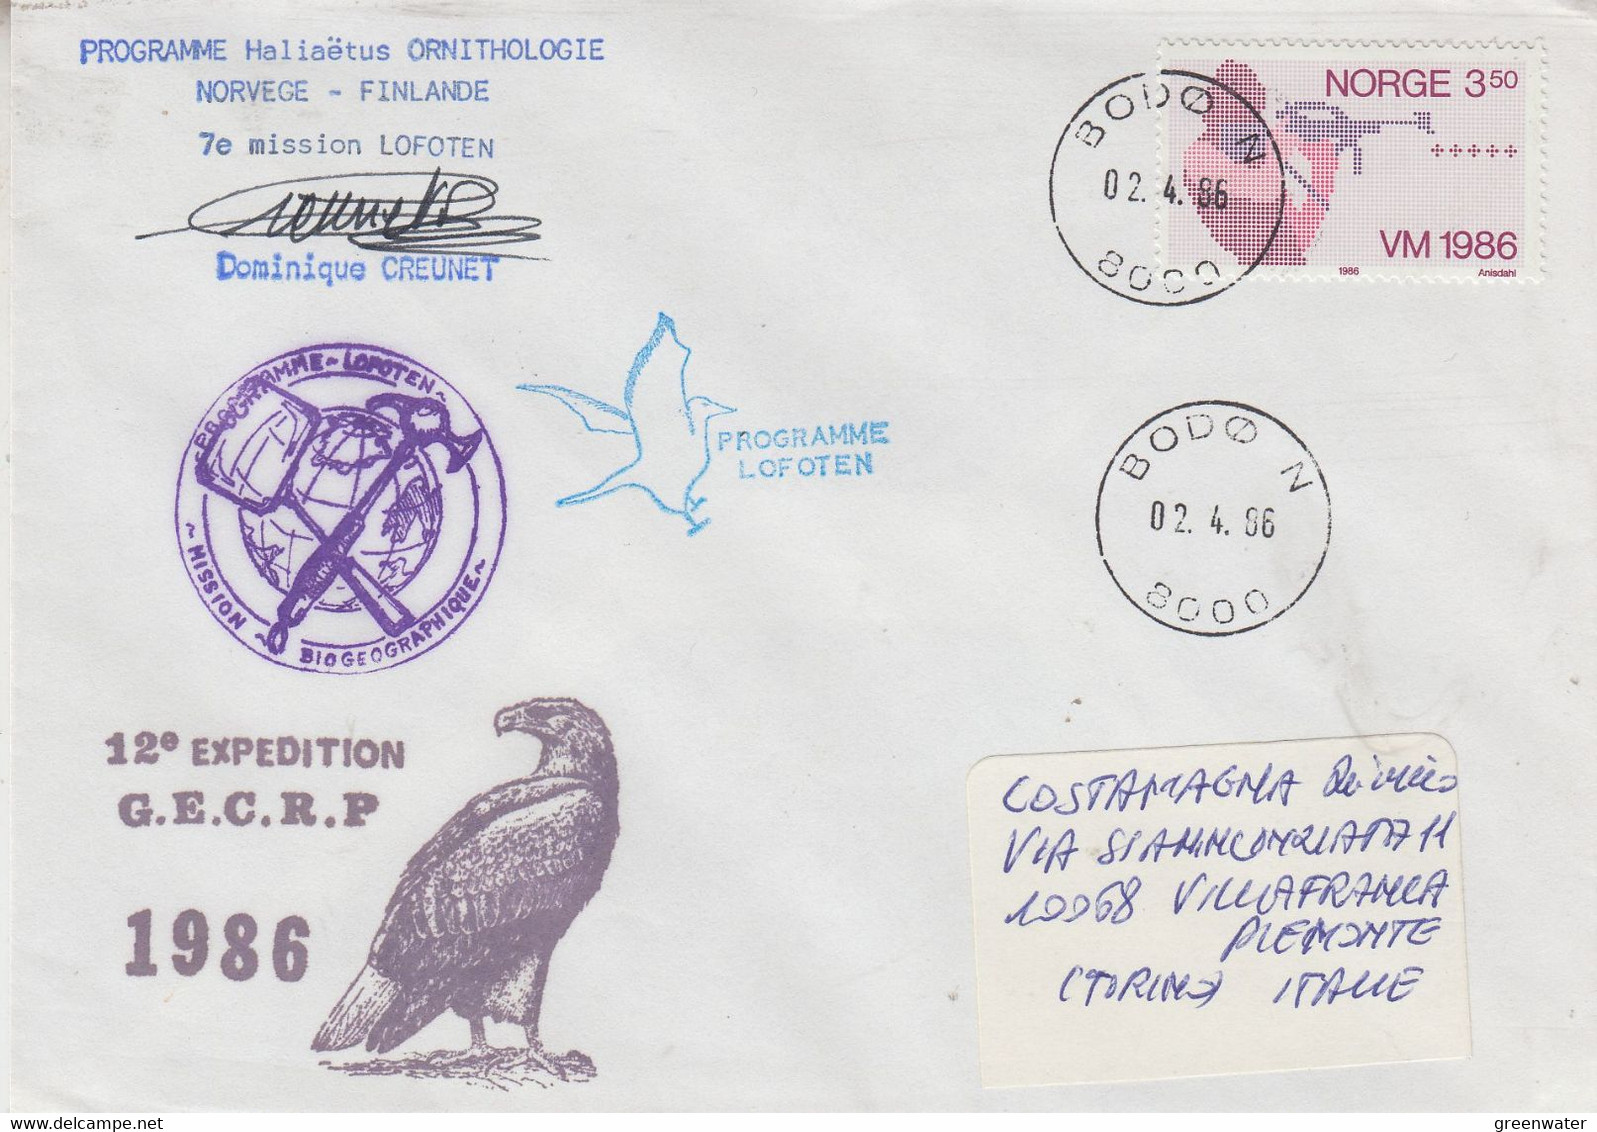 Norway 1986 7e Mission Lofoten Signature Ca Bodo 02-4-1986 (58152) - Programmi Di Ricerca